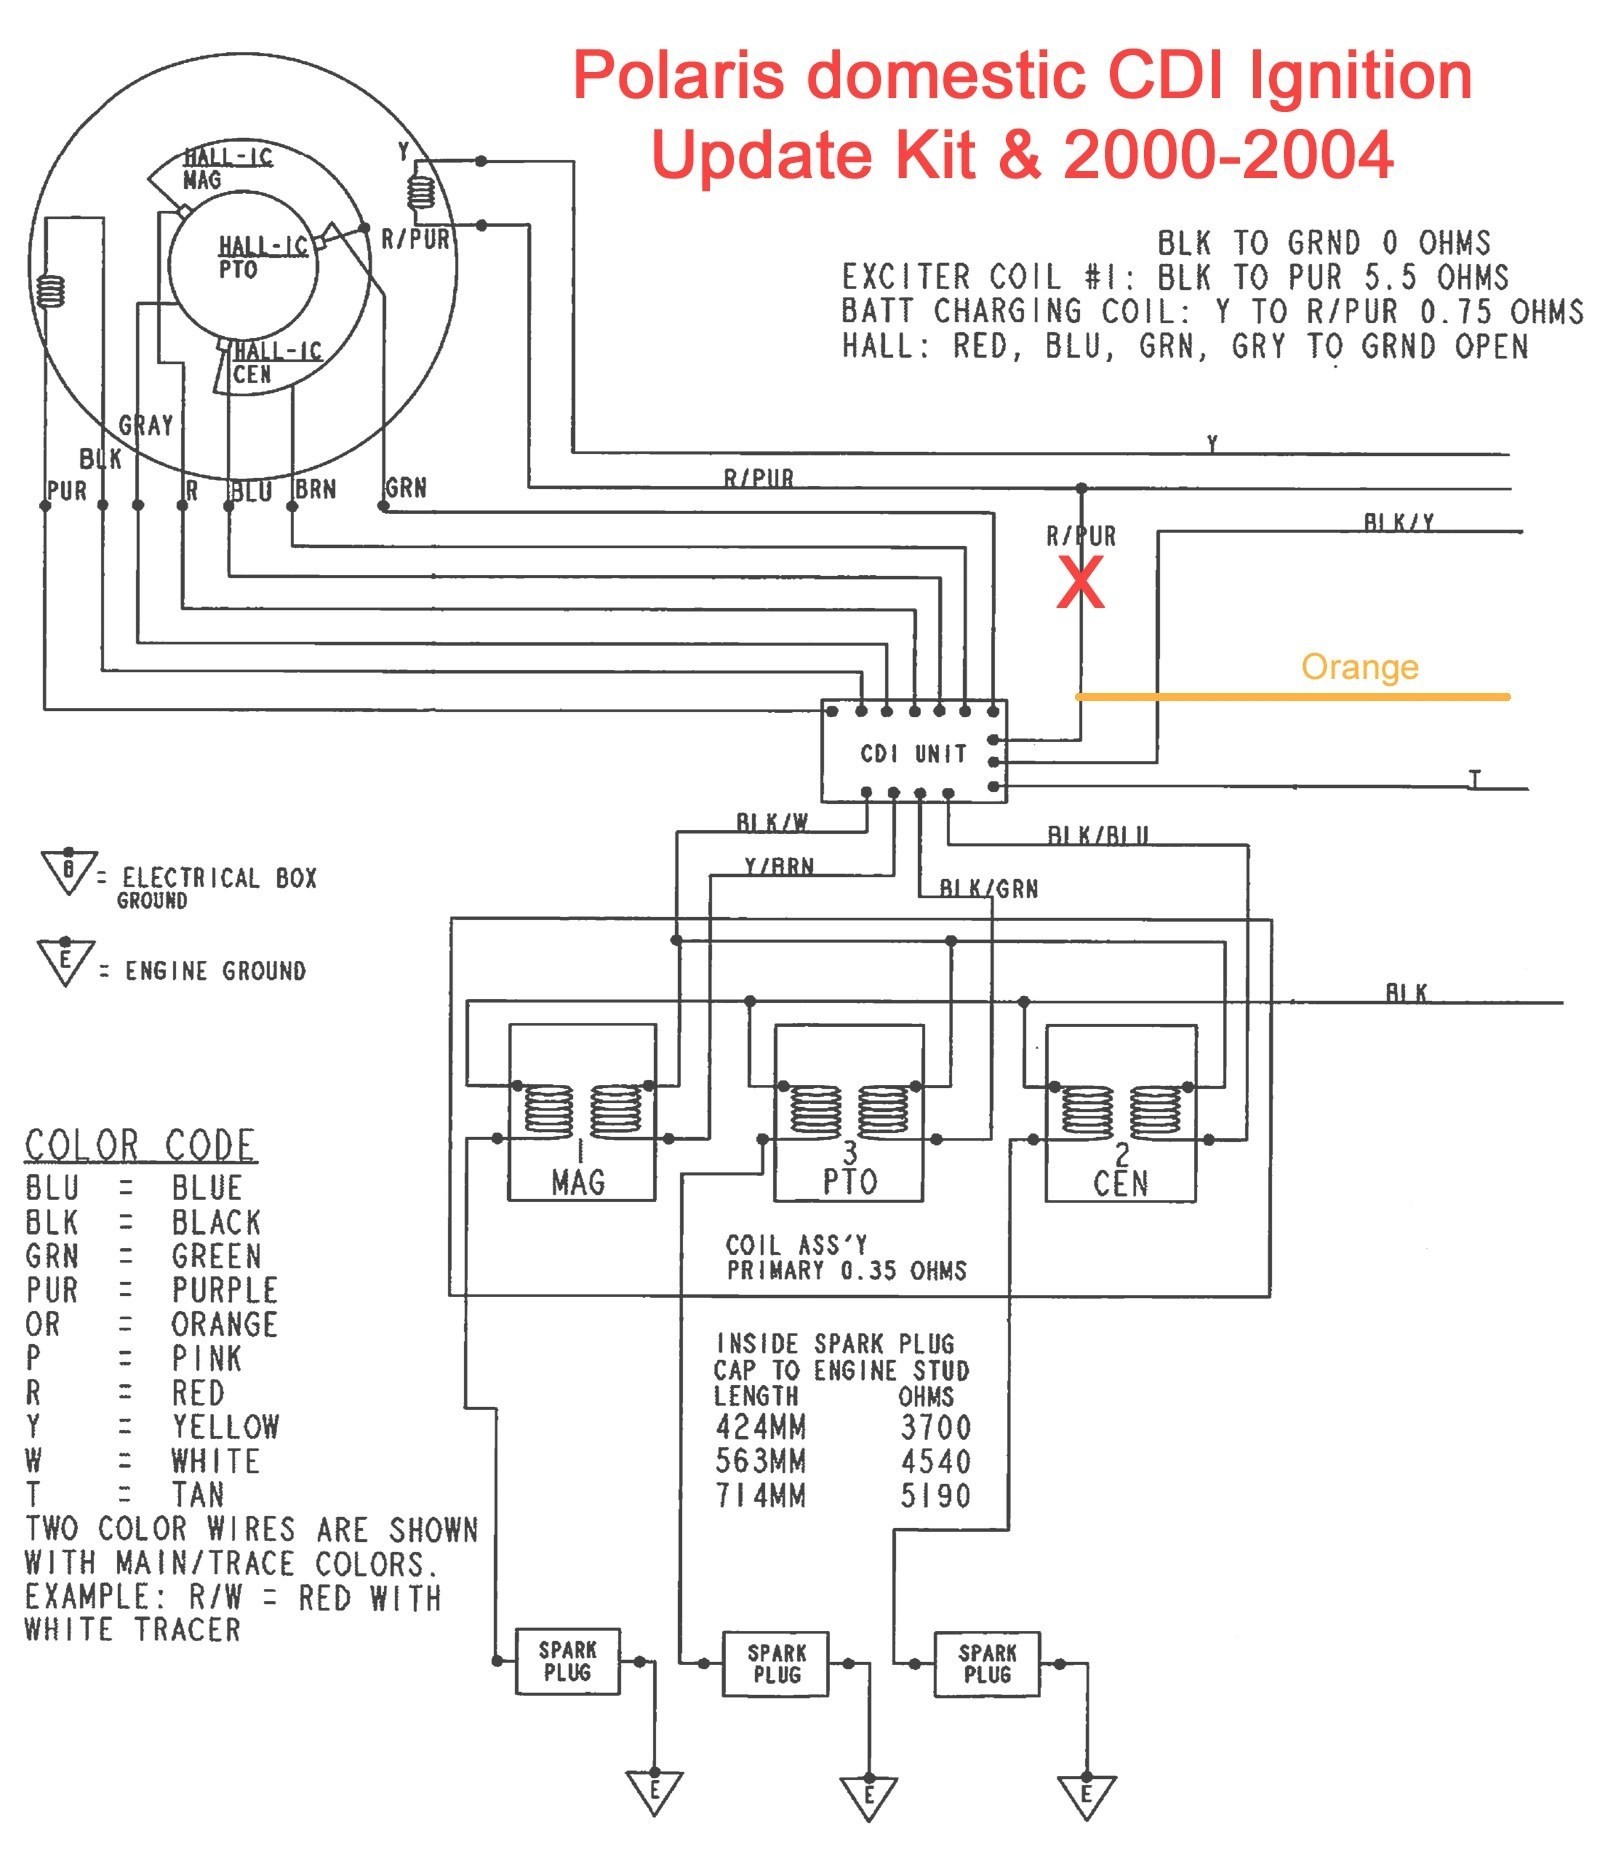 Polaris Ranger Engine Diagram 2001 Polaris Sportsman 90 Wiring Free Image About Wiring Diagram and